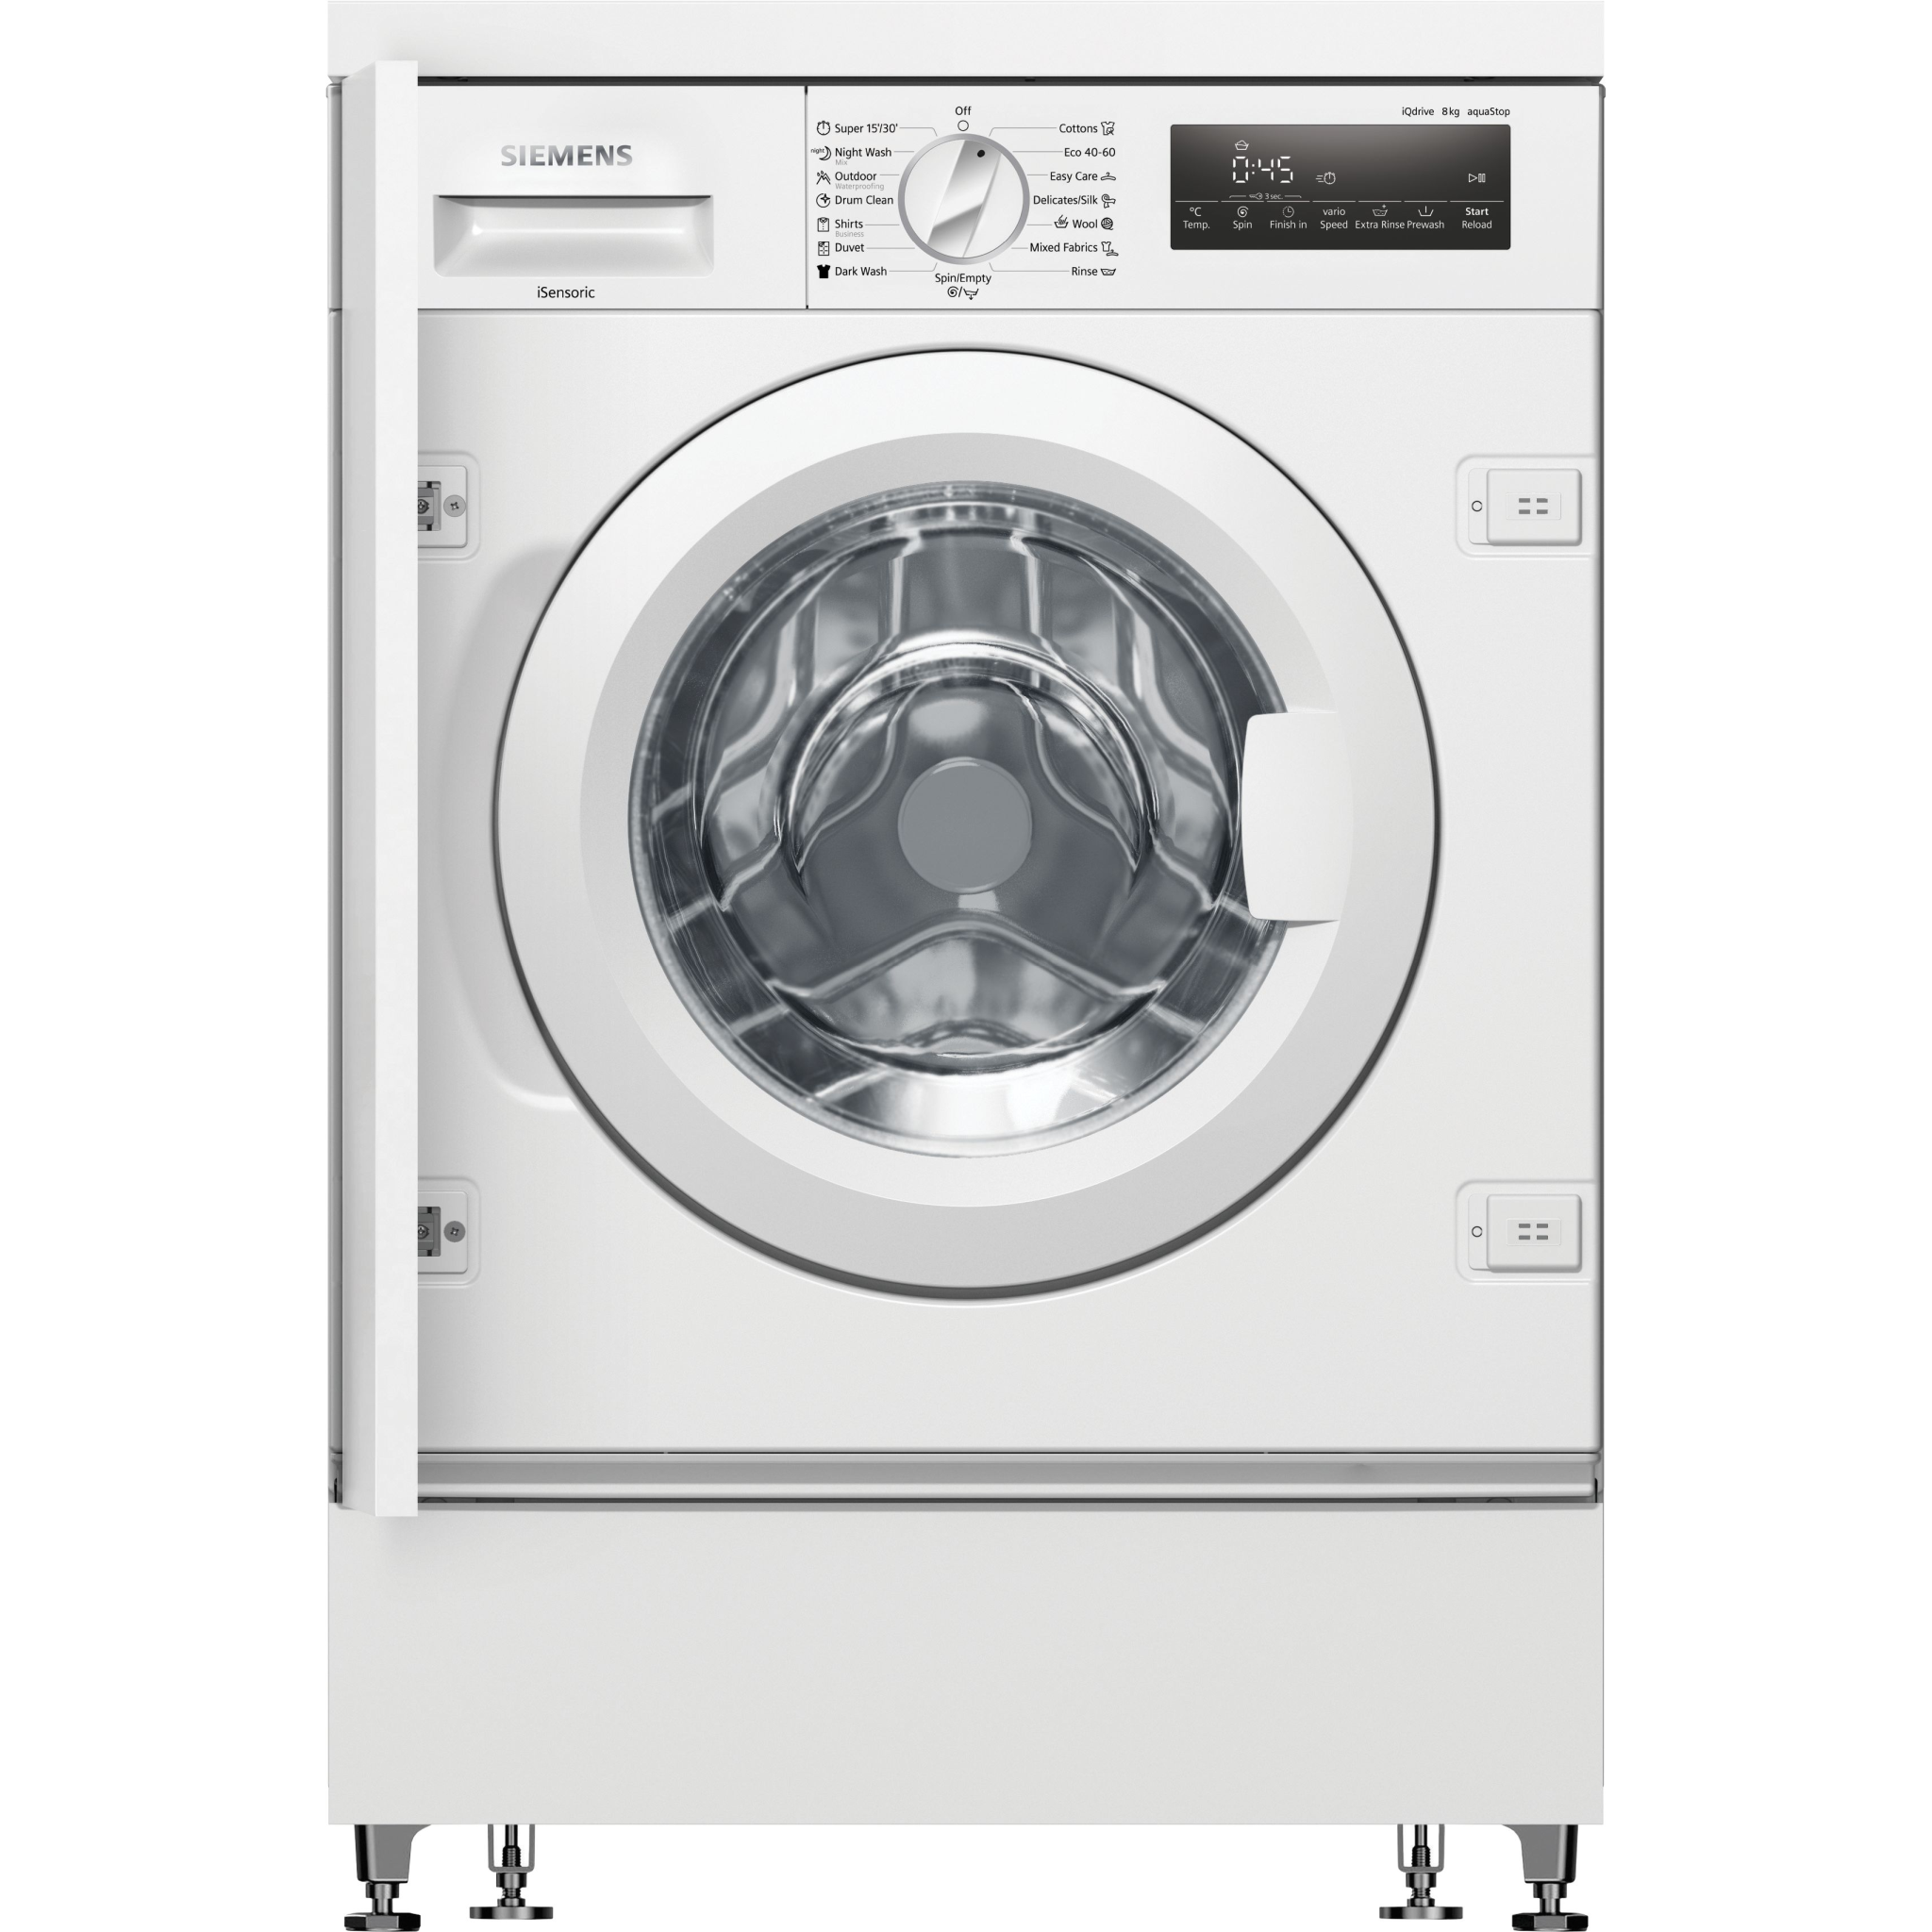 4242003923269 Siemens WI14W542EU - Frontbetjent vaskemaskine t/indbygning Hvidevarer,Vaskemaskine,Frontbetjente vaskemaskiner 11400007400 WI14W542EU